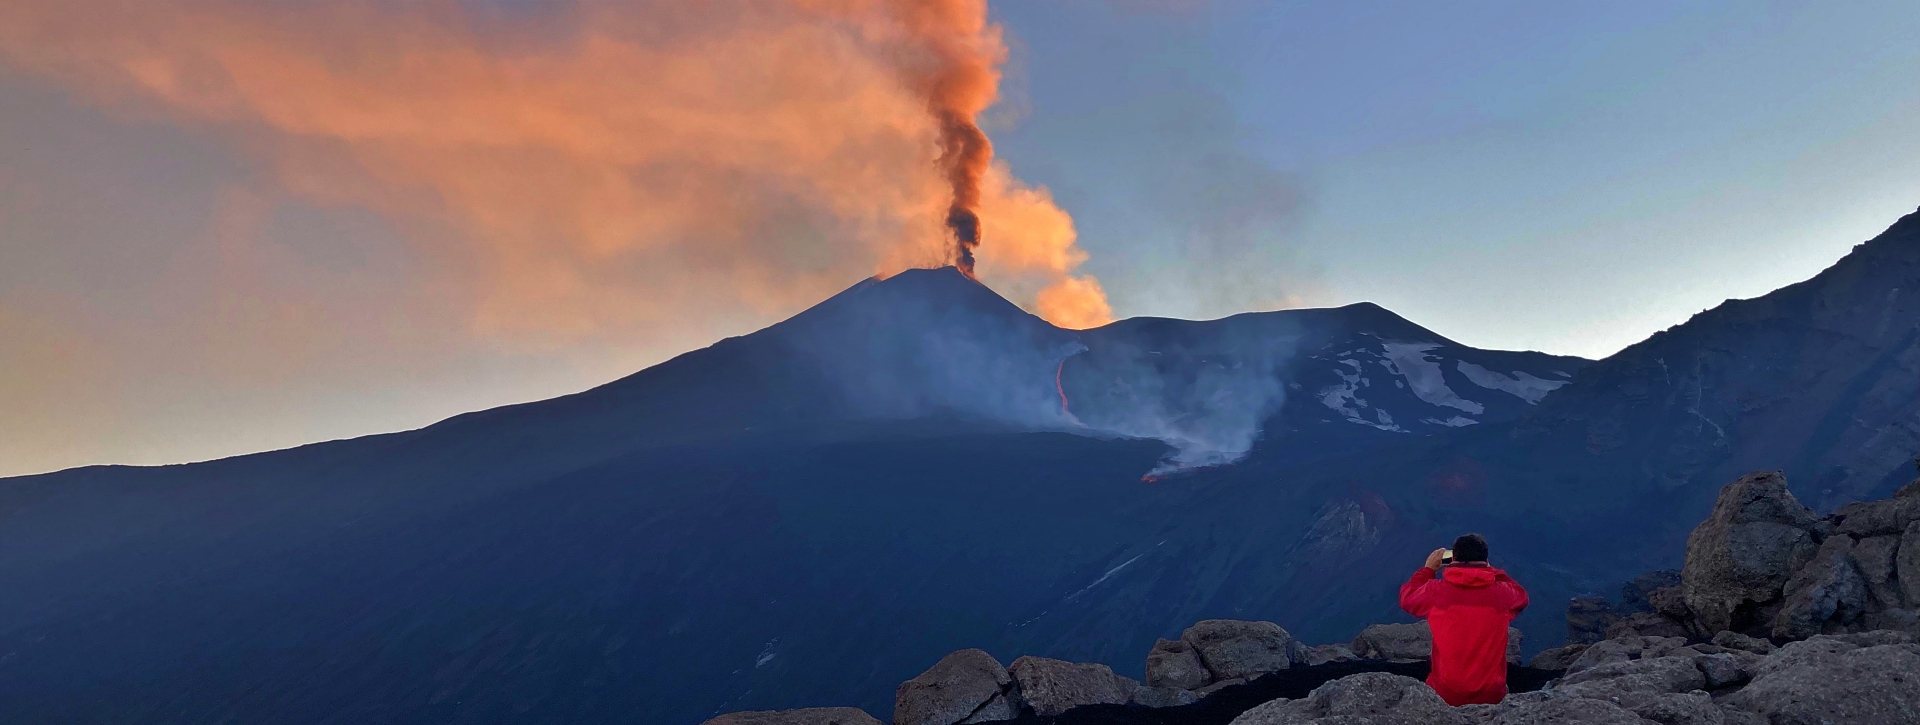 Escursione speciale all'alba sull'Etna